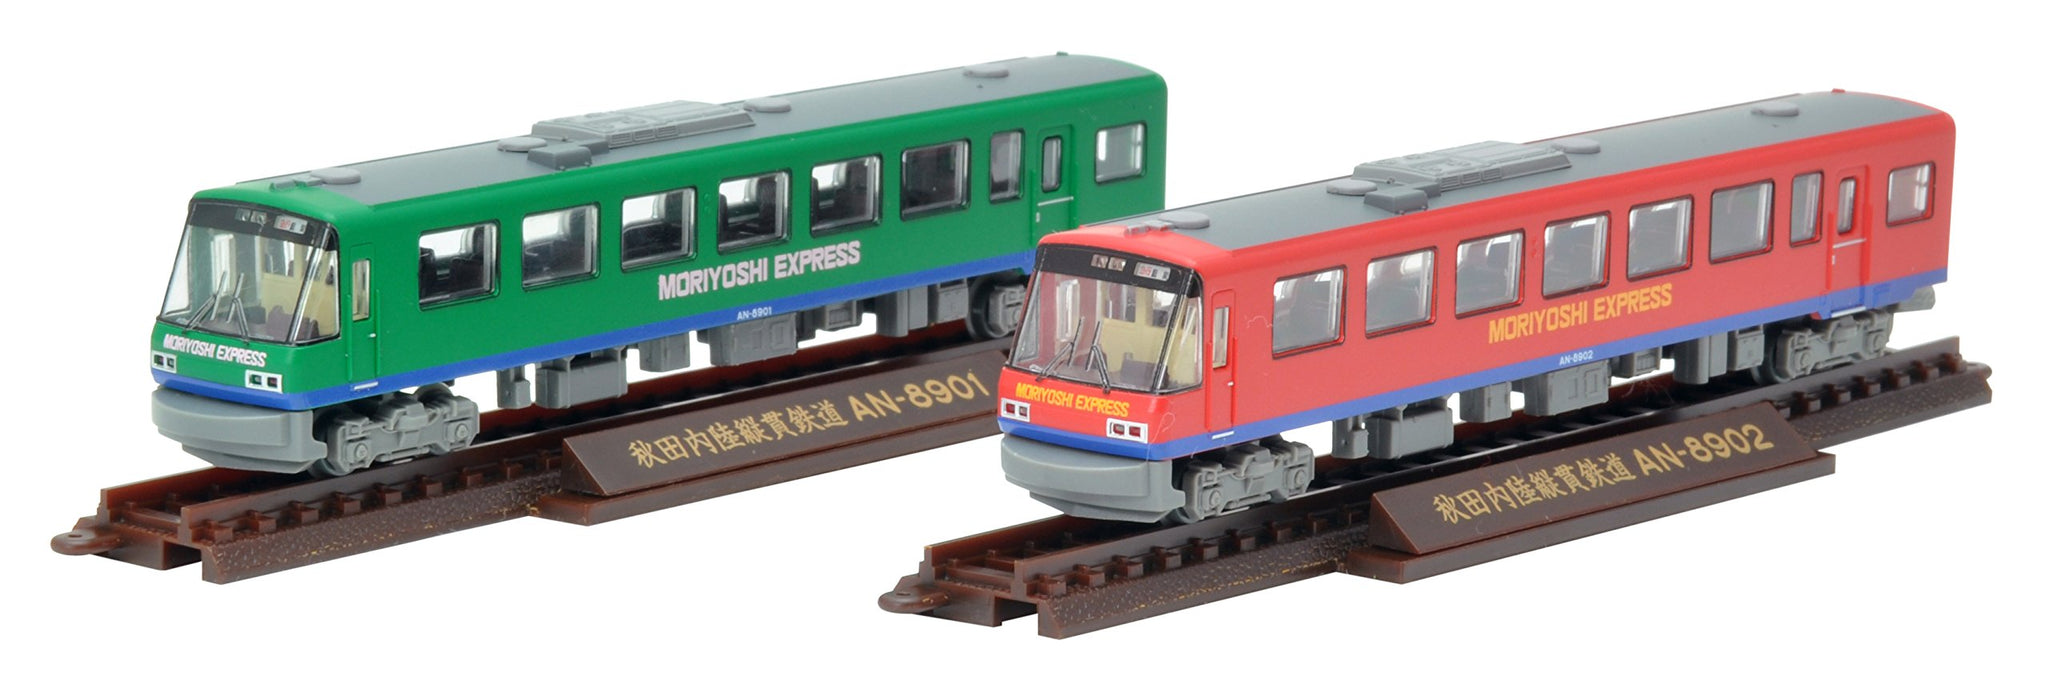 Tomytec Geocolle Eisenbahn-Kollektion, 2-Wagen-Set Akita Nairiku Jukan An8900 Express